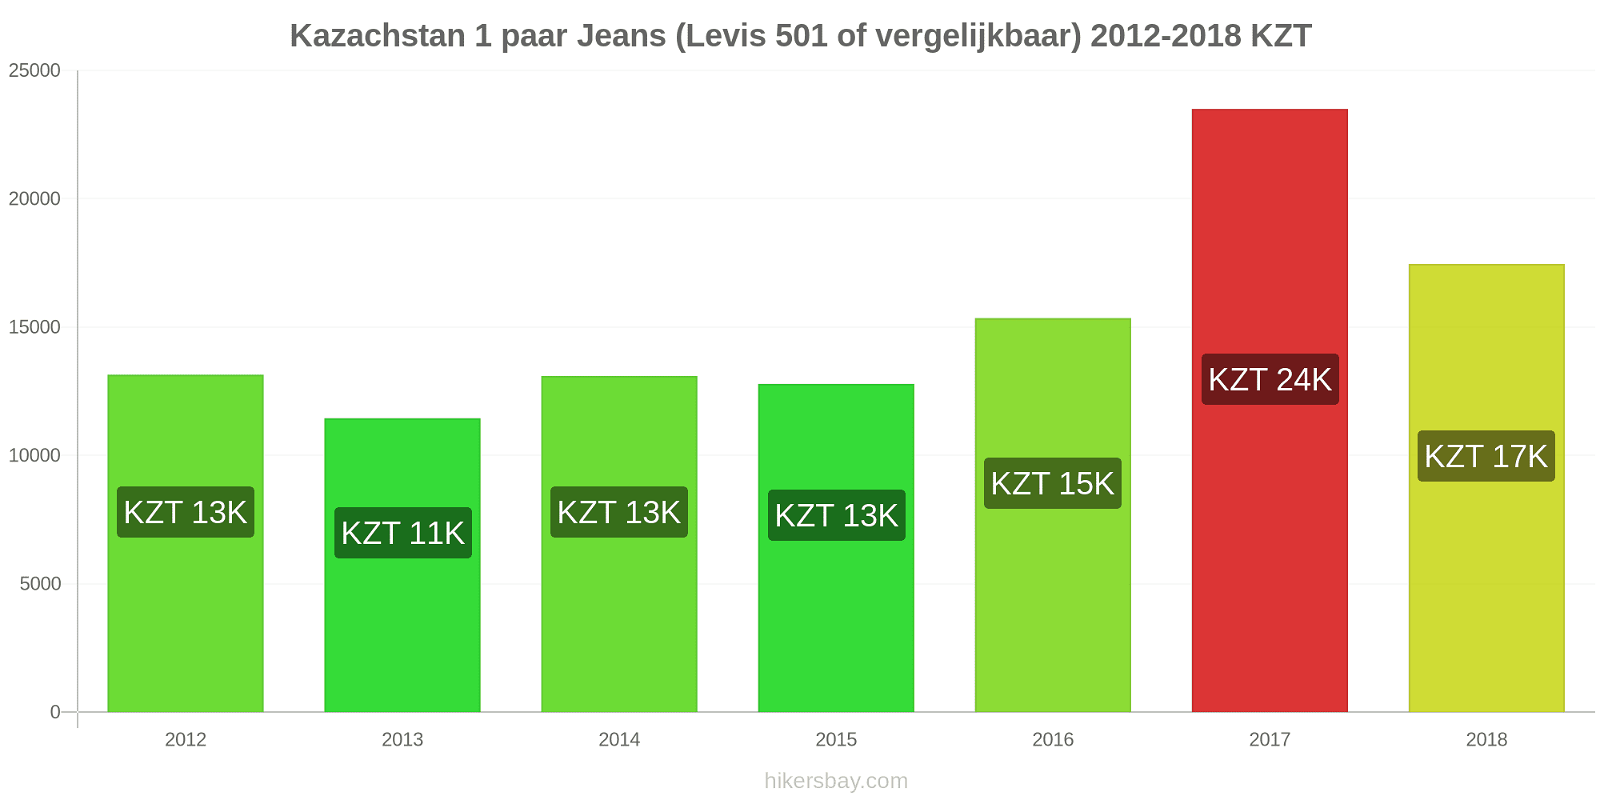 Kazachstan prijswijzigingen 1 paar jeans (Levis 501 of vergelijkbaar) hikersbay.com